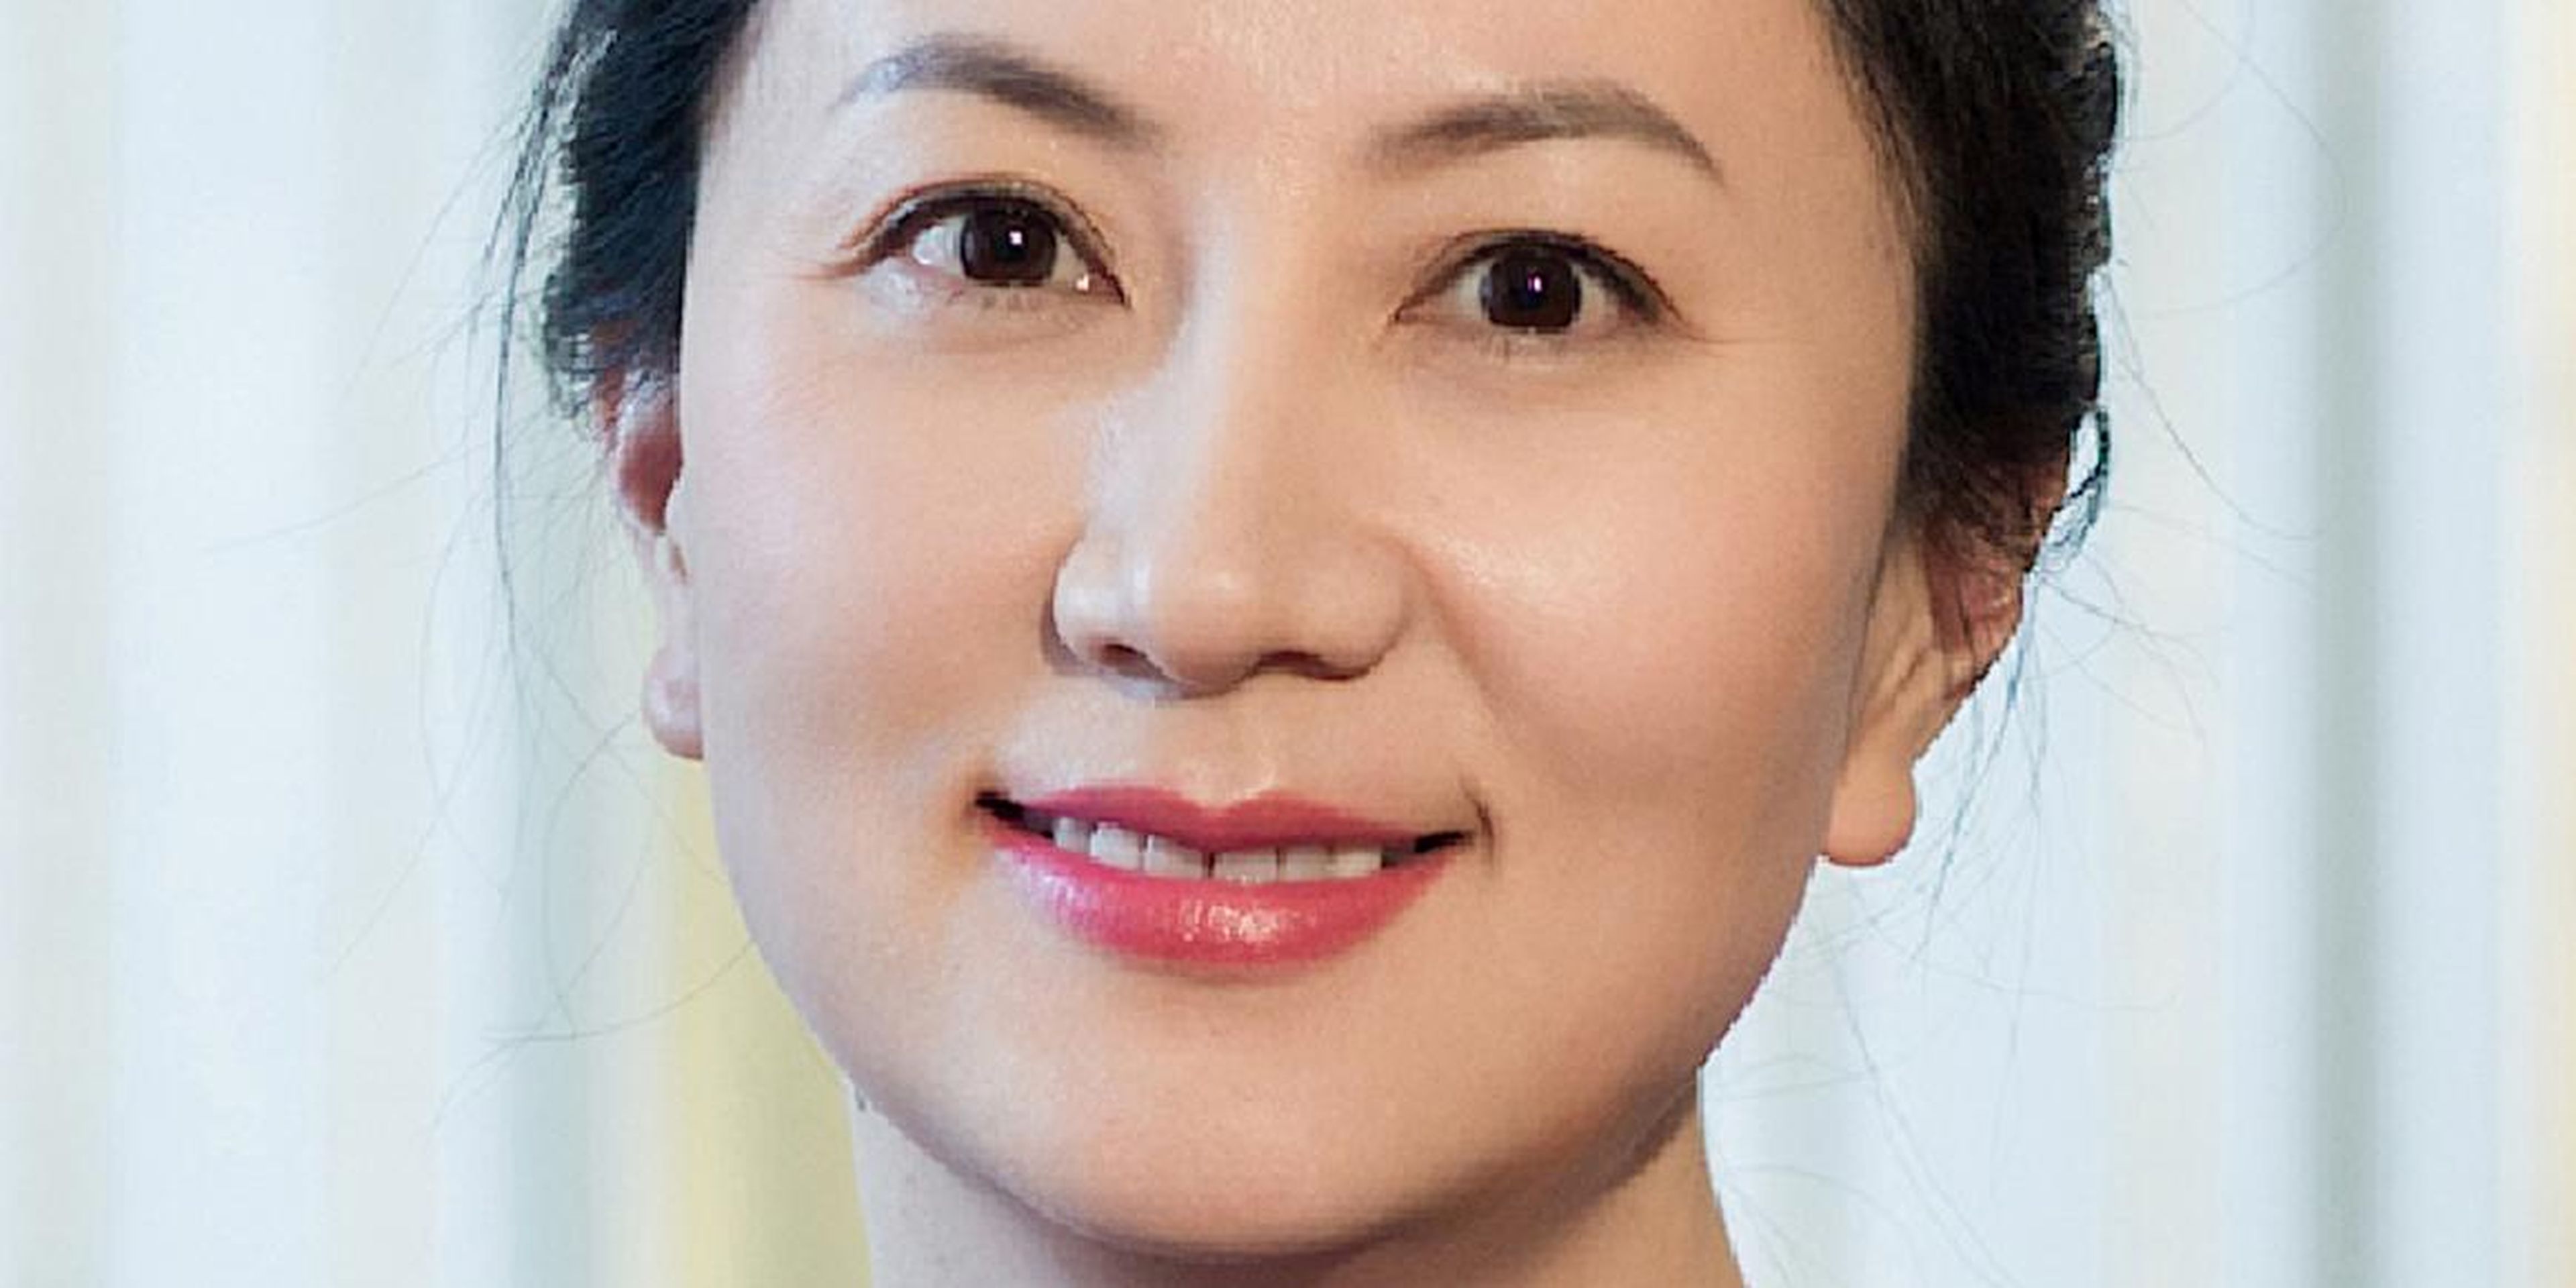 Meng Wanzhou, directora financiera de Huawei, ha sido arrestada en Canadá, según se ha informado.